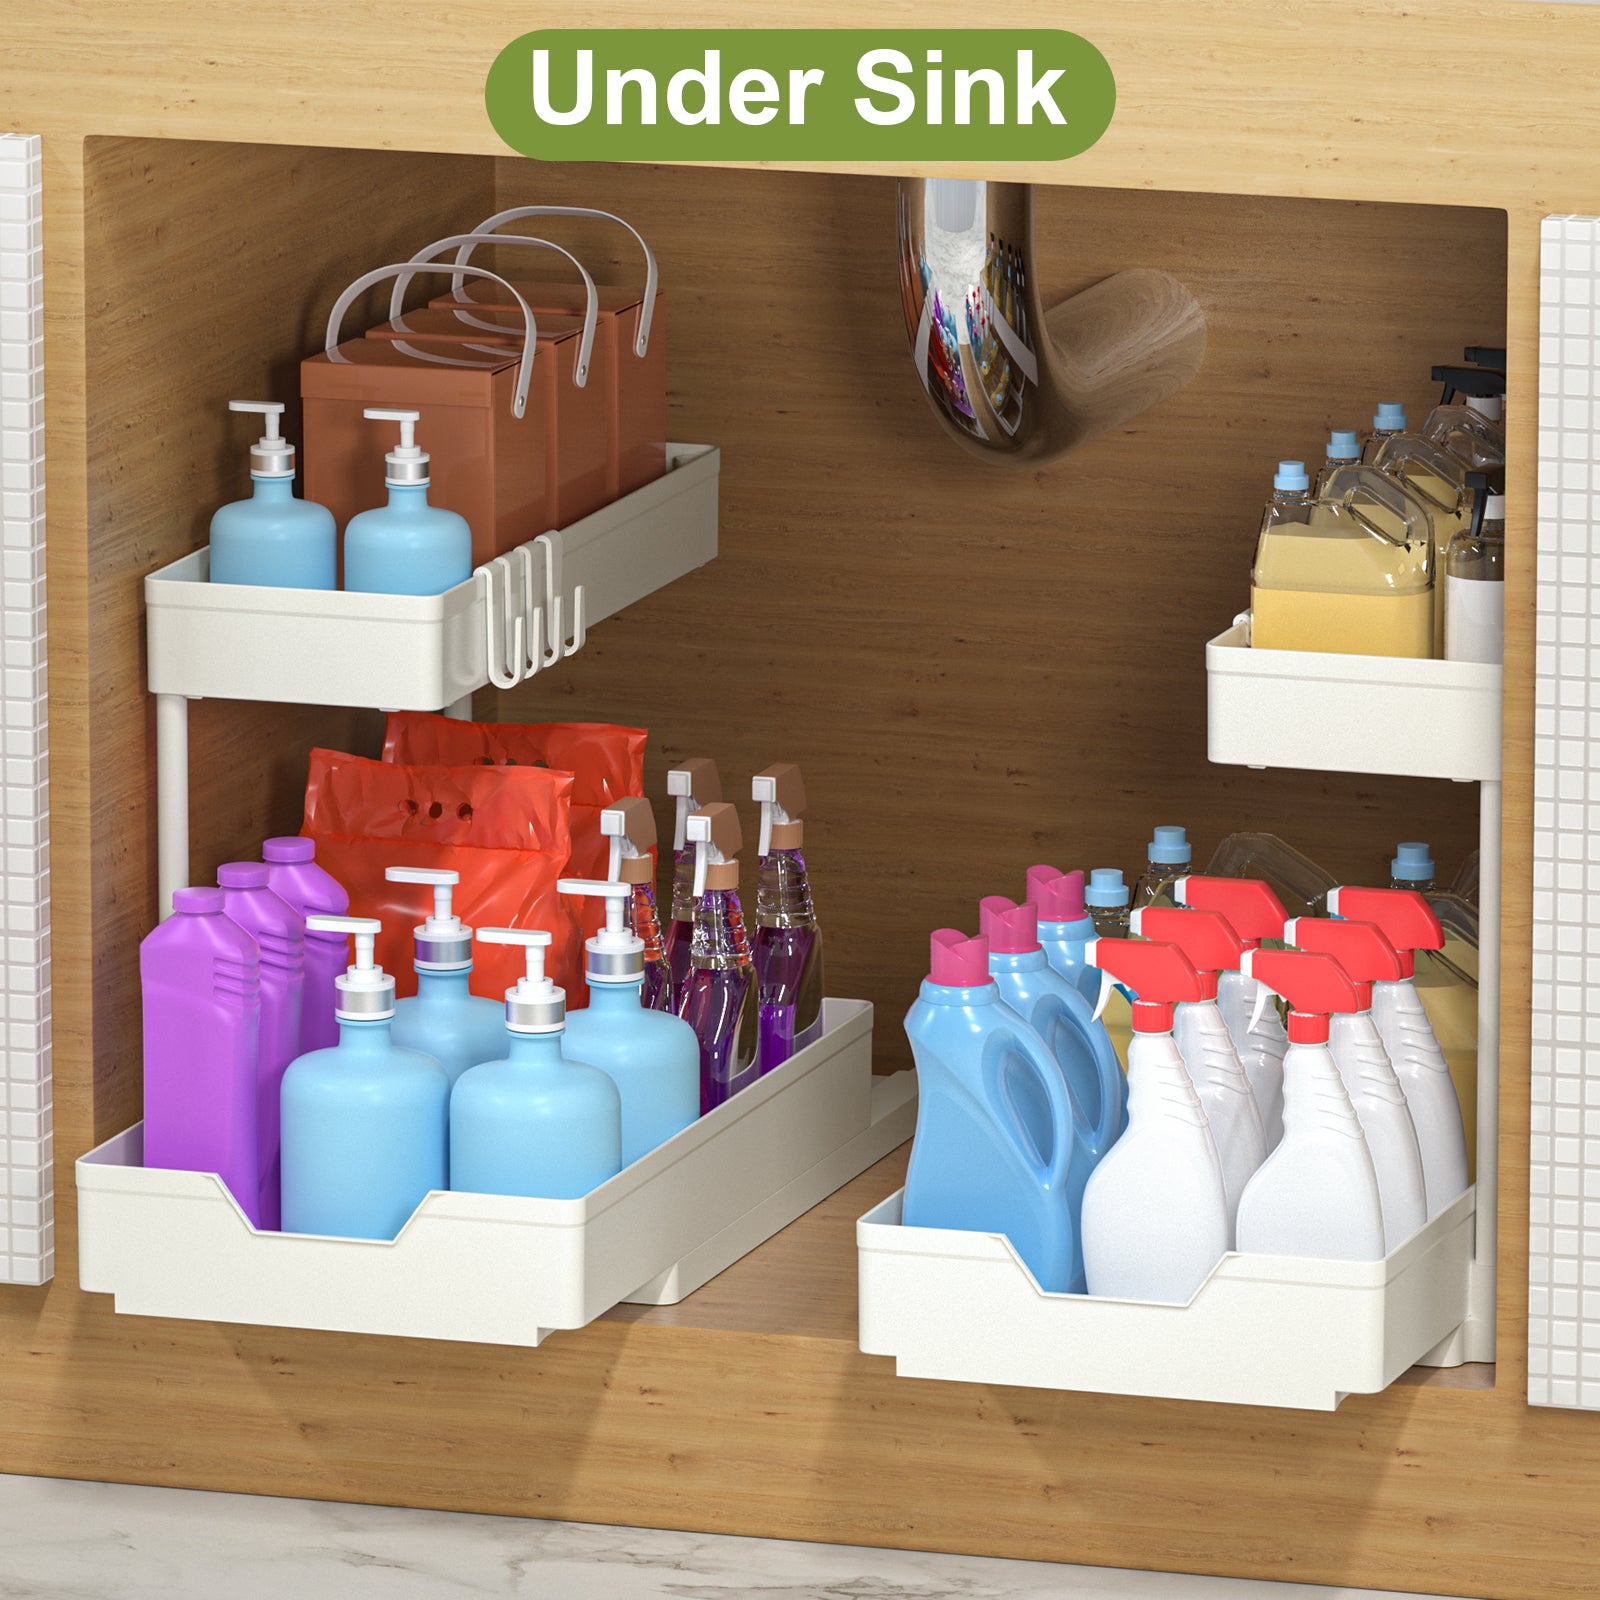 Plastic Under Sink Organizer